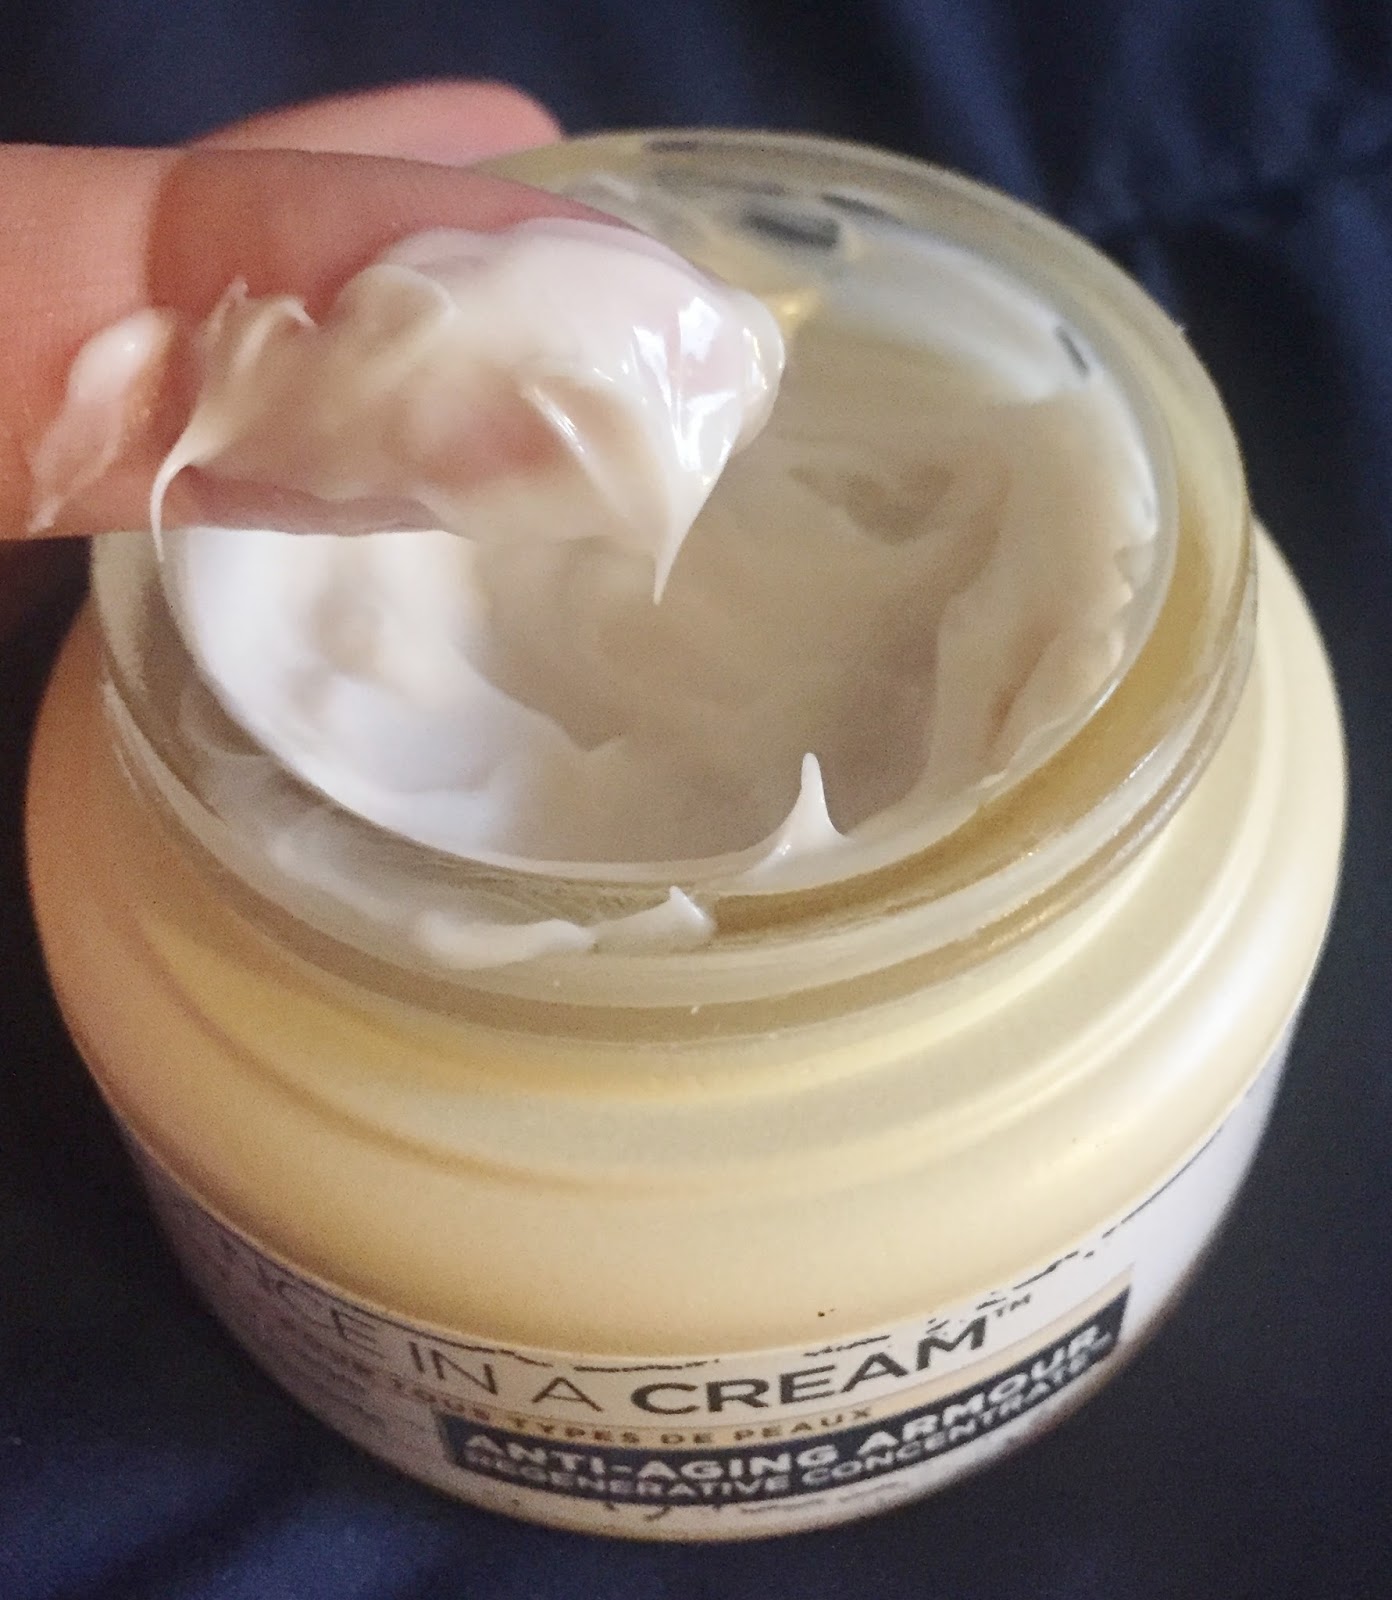 à¸à¸¥à¸à¸²à¸£à¸à¹à¸à¸«à¸²à¸£à¸¹à¸à¸�à¸²à¸à¸ªà¸³à¸«à¸£à¸±à¸ it cosmetics confidence in a cream